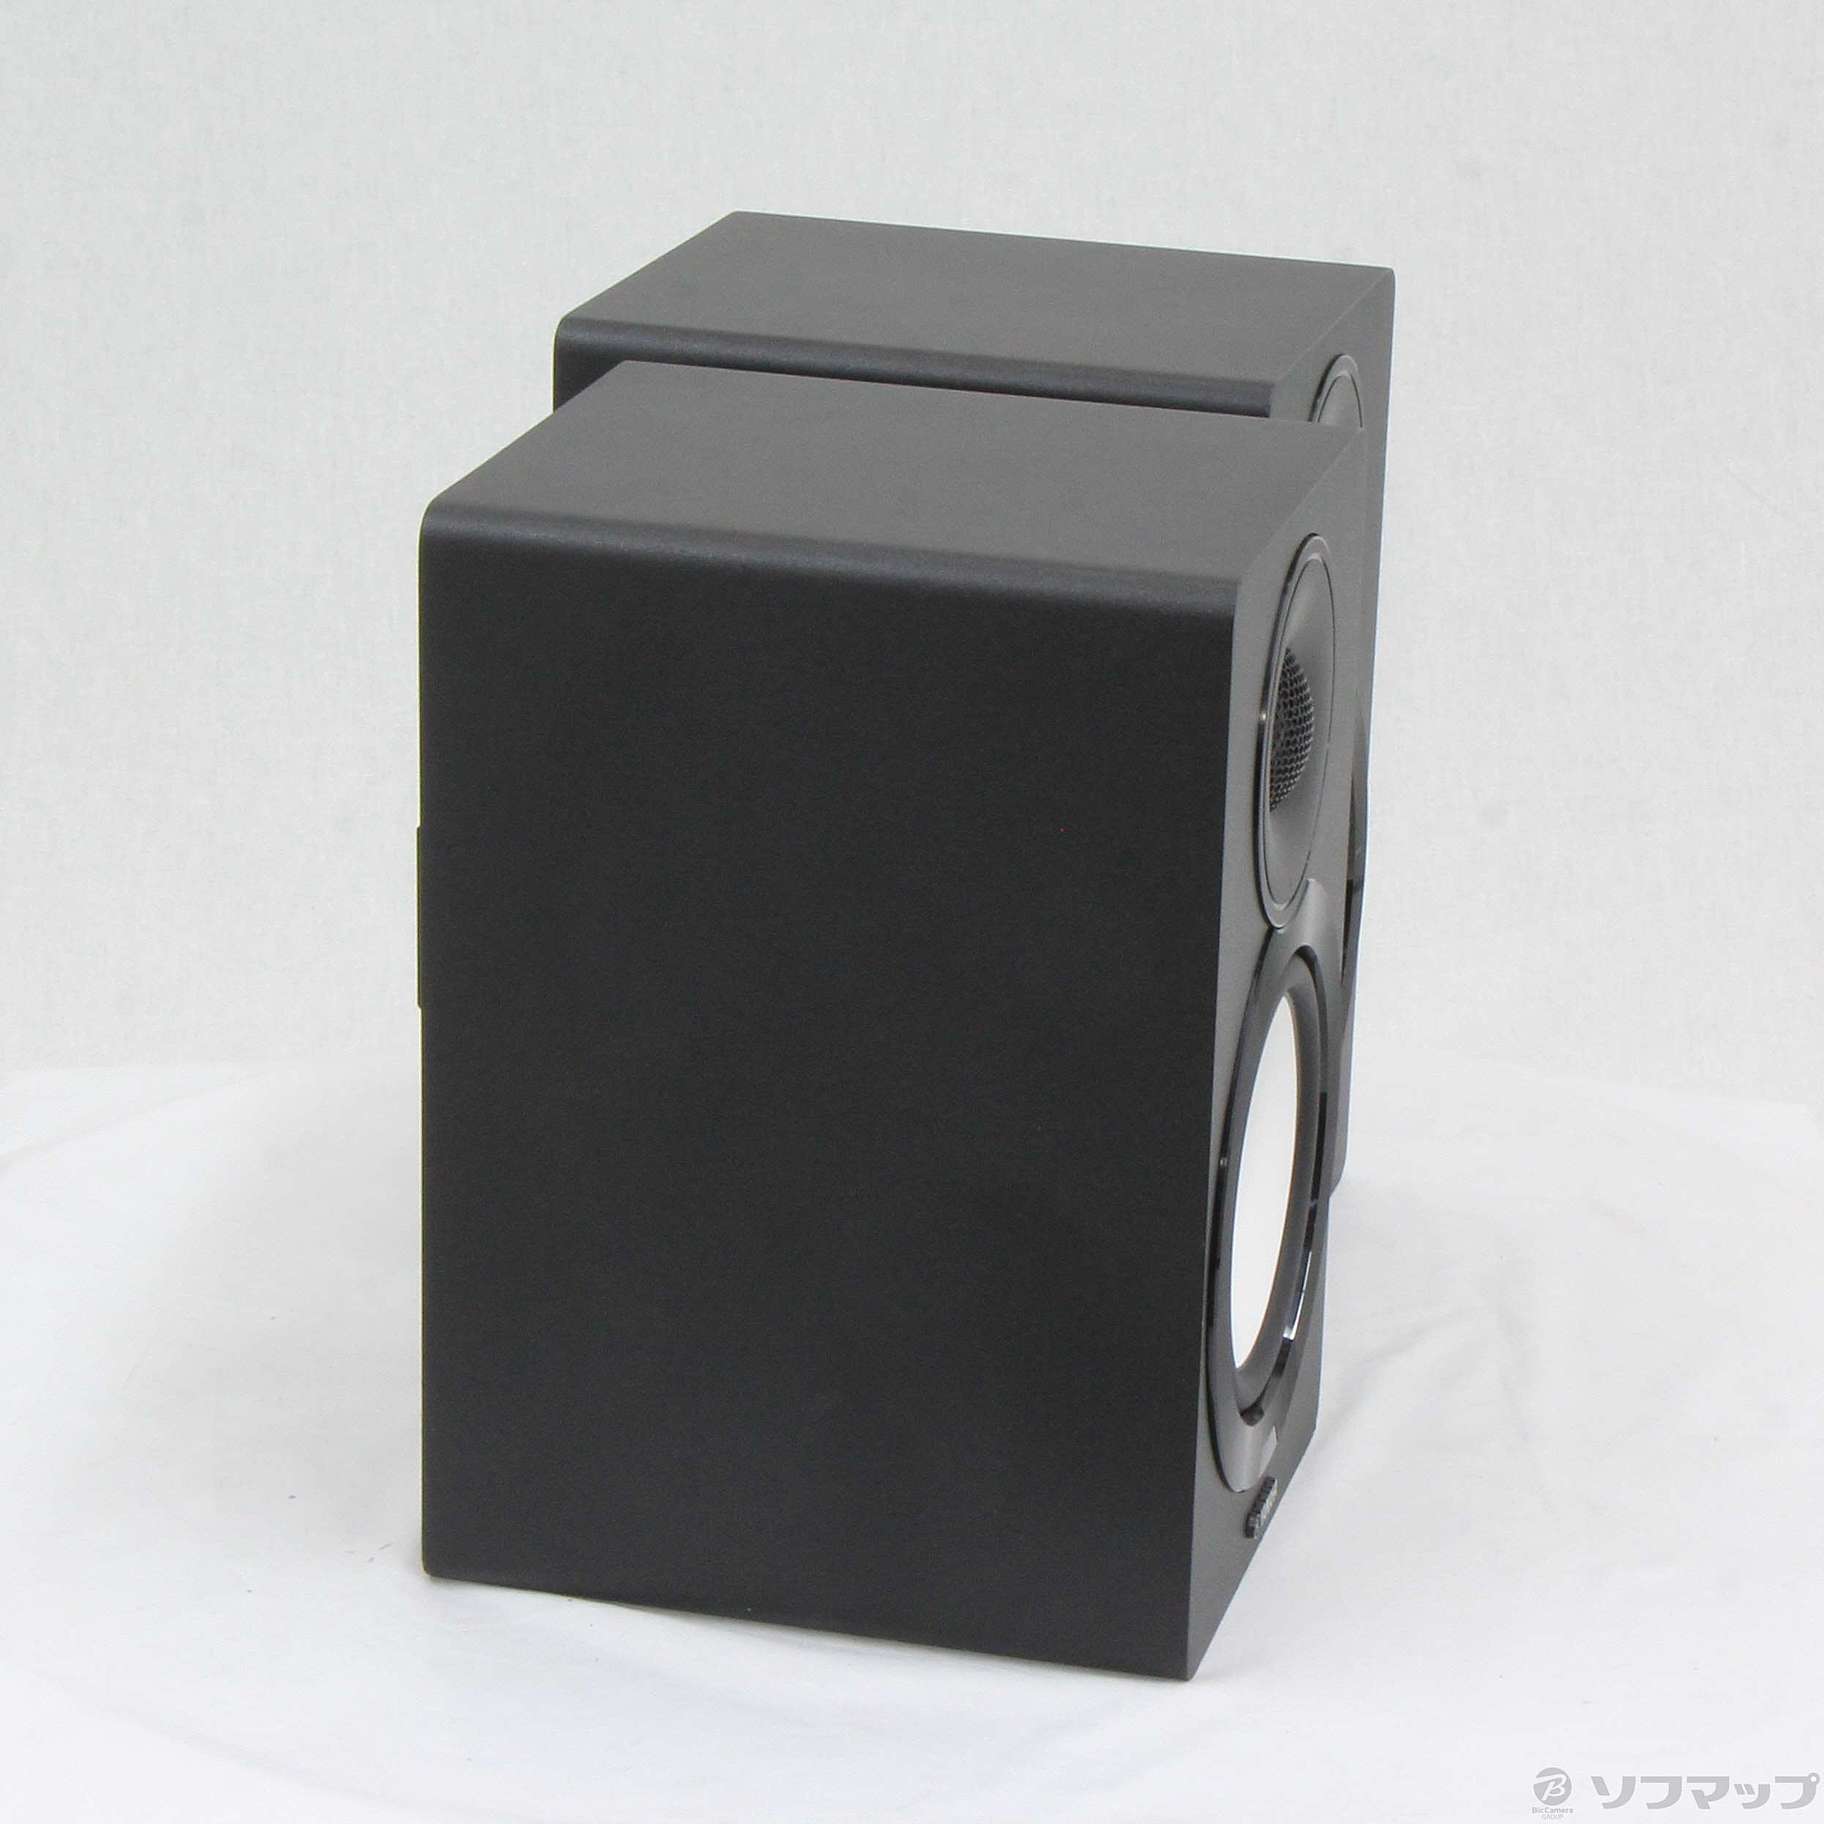 中古】NX-N500 ブラック ペア ネットワーク・パワードスピーカー